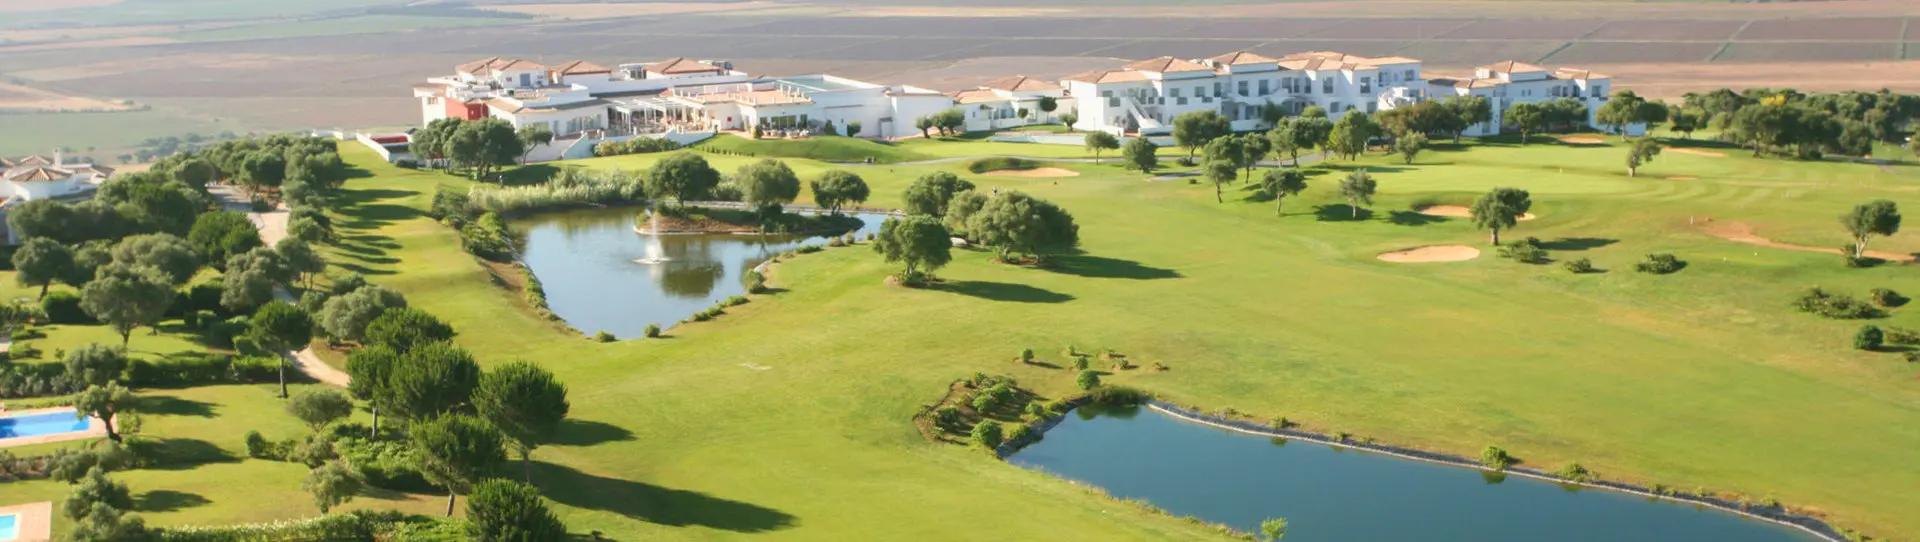 Spain golf courses - Fairplay Golf Course - Photo 2